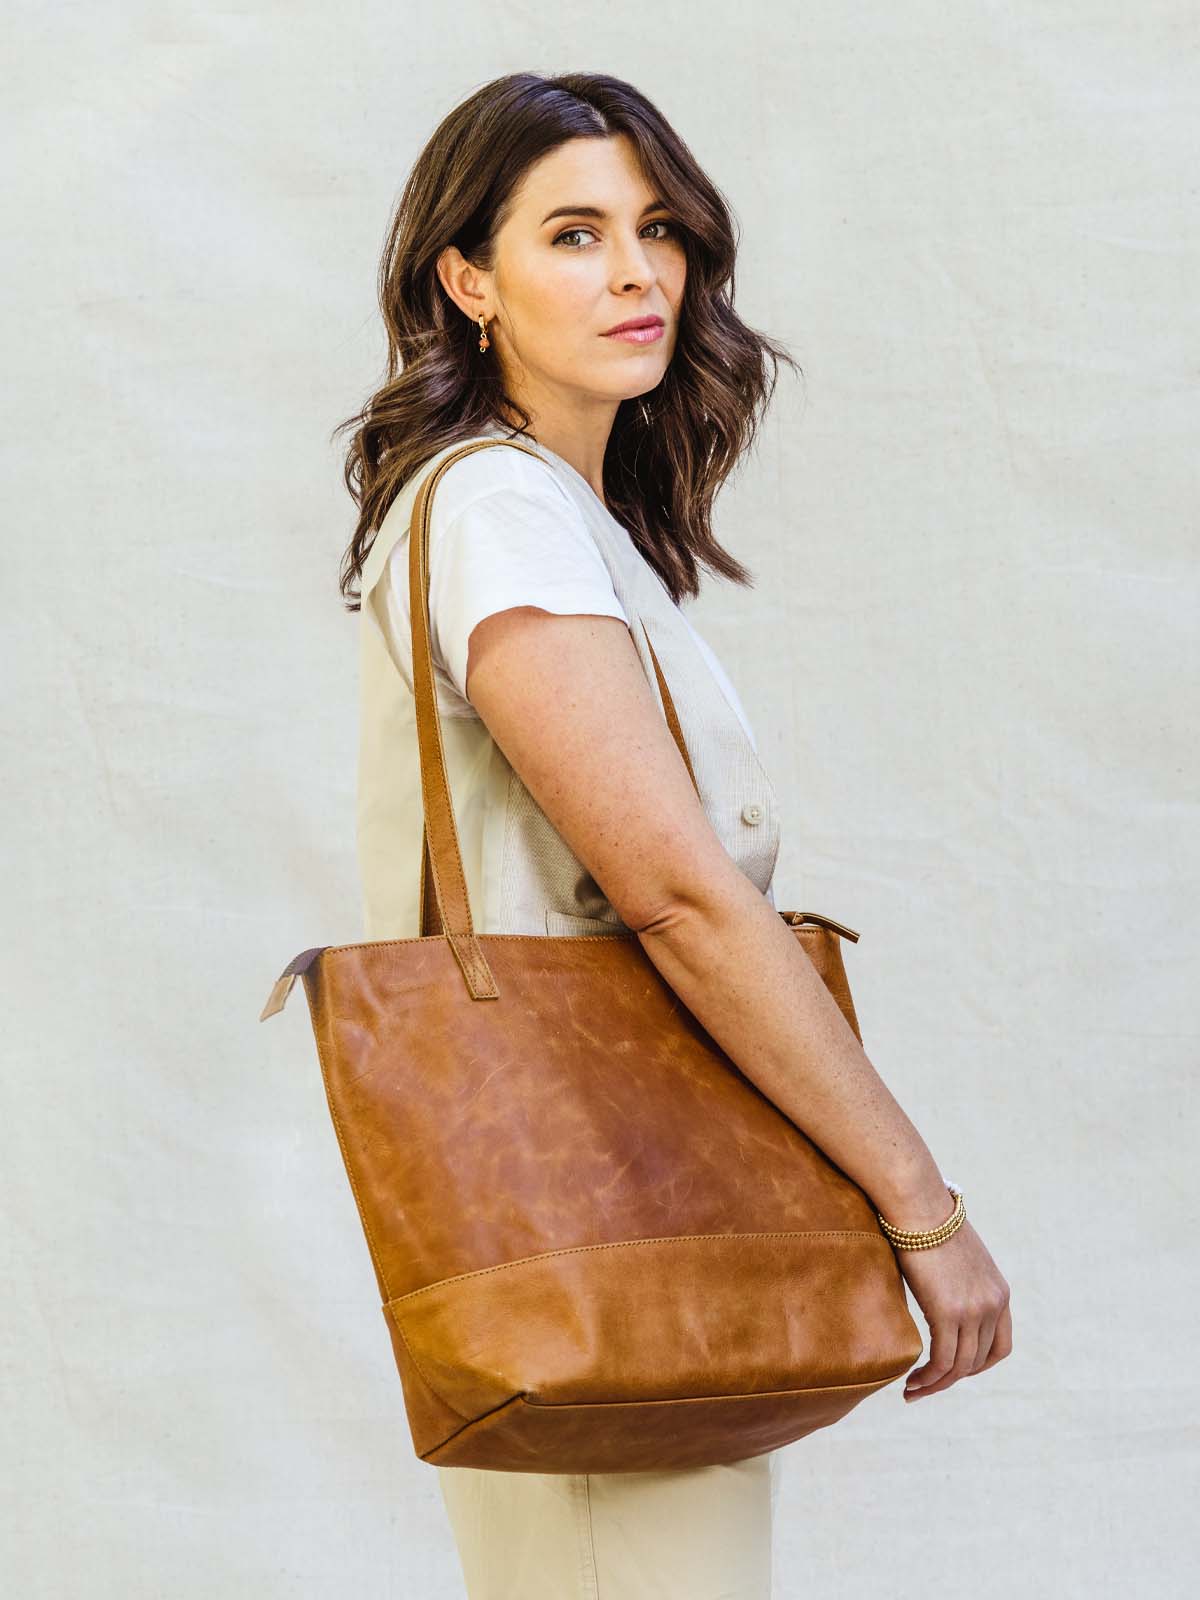 Brunette female model holding hazelnut colored leather tote bag over the shoulder. 